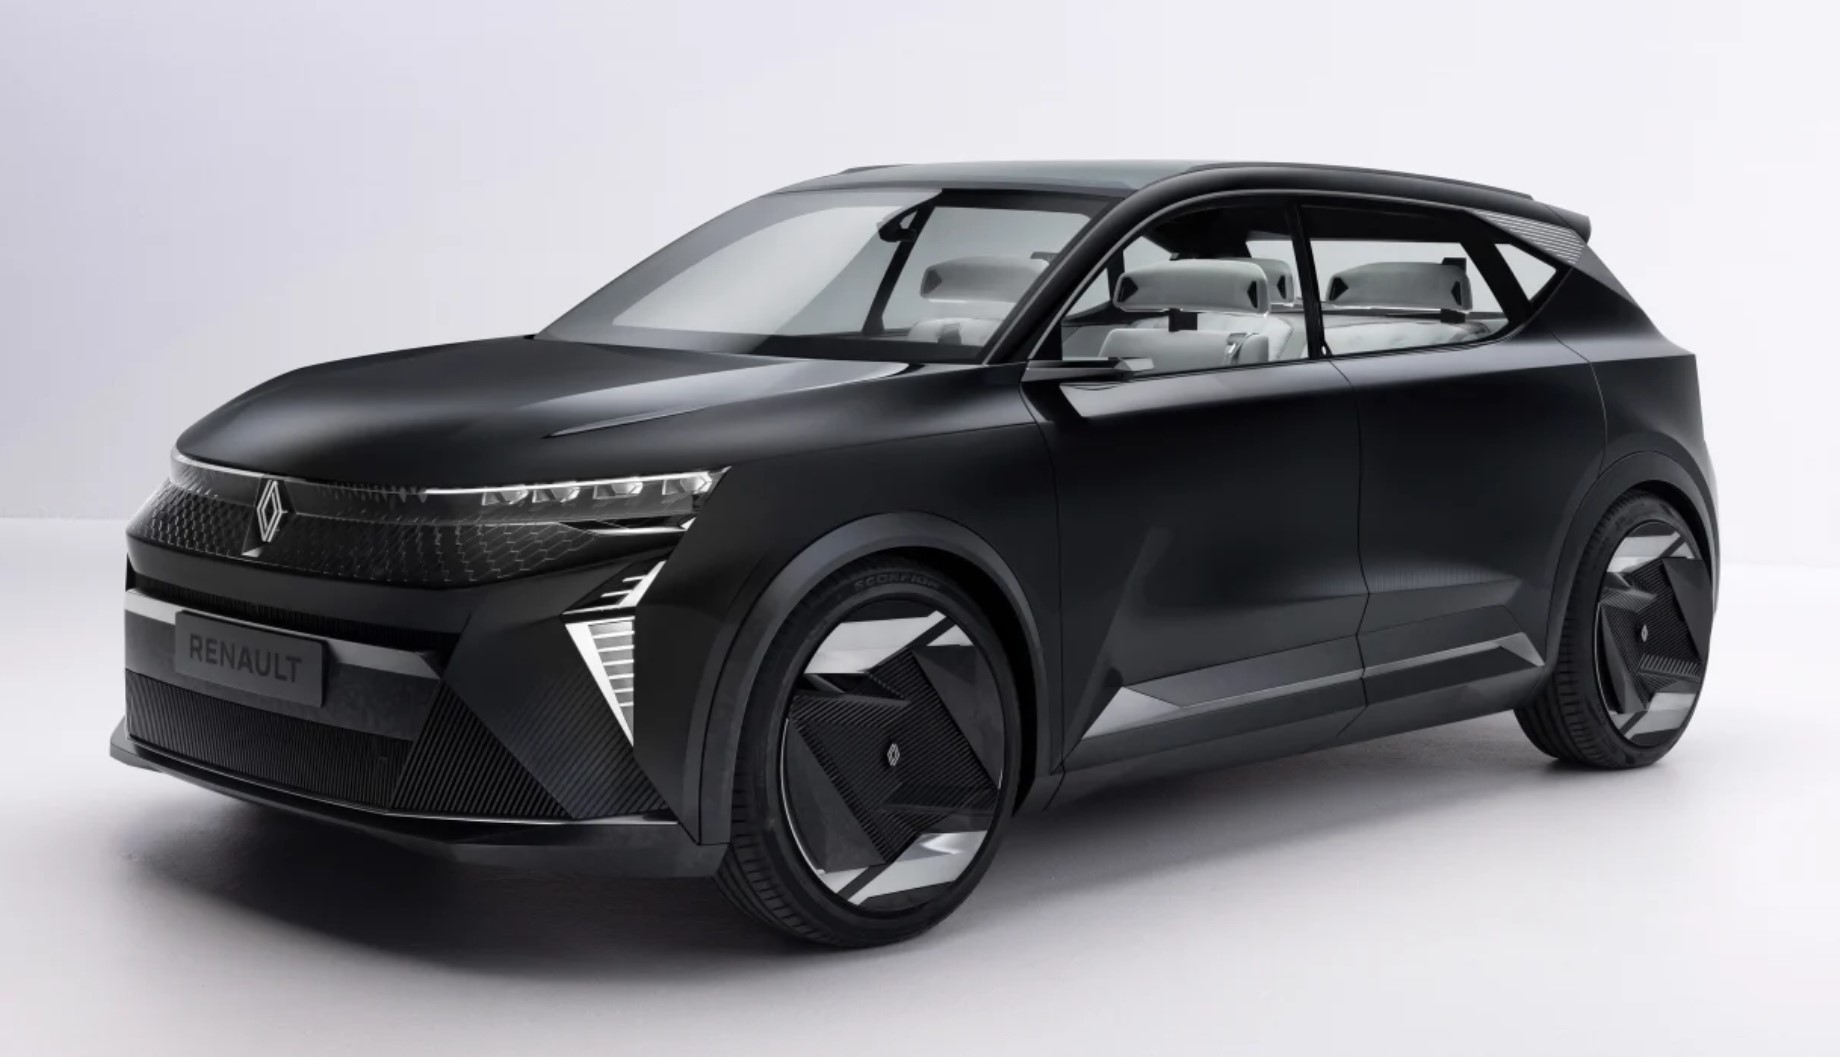 aria-label="Renault SCenic Vision concept car 1"